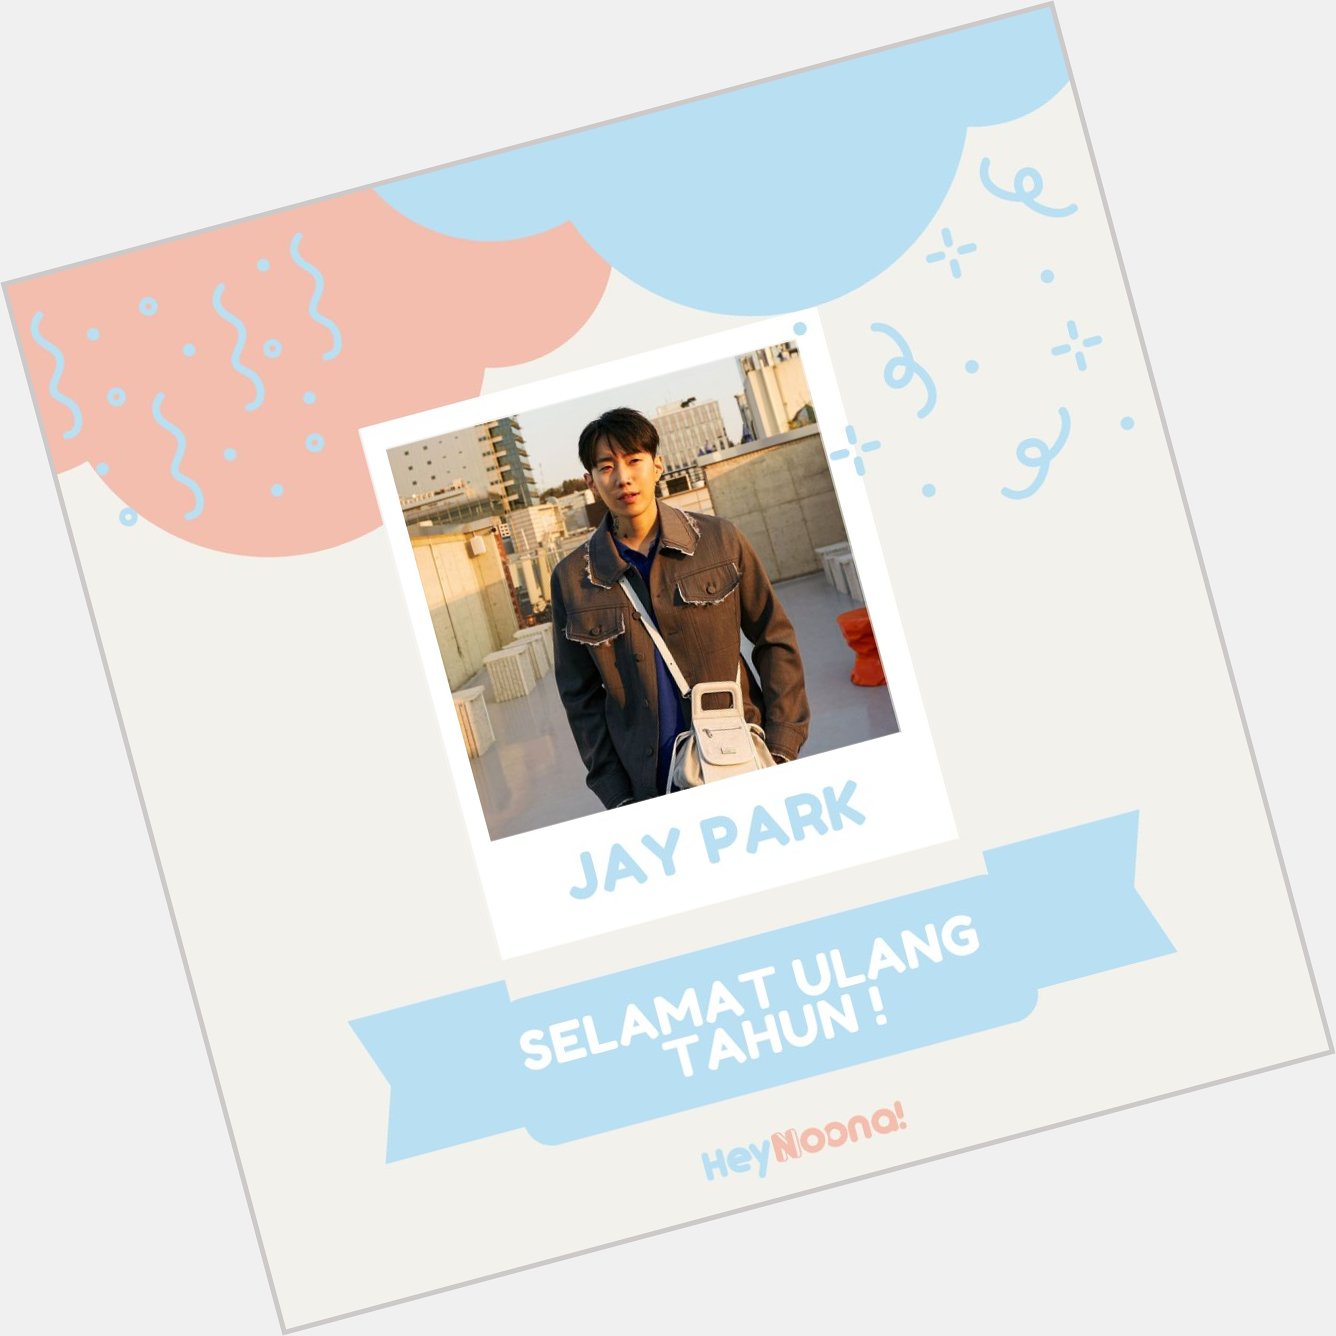  Happy Birthday Jay Park    